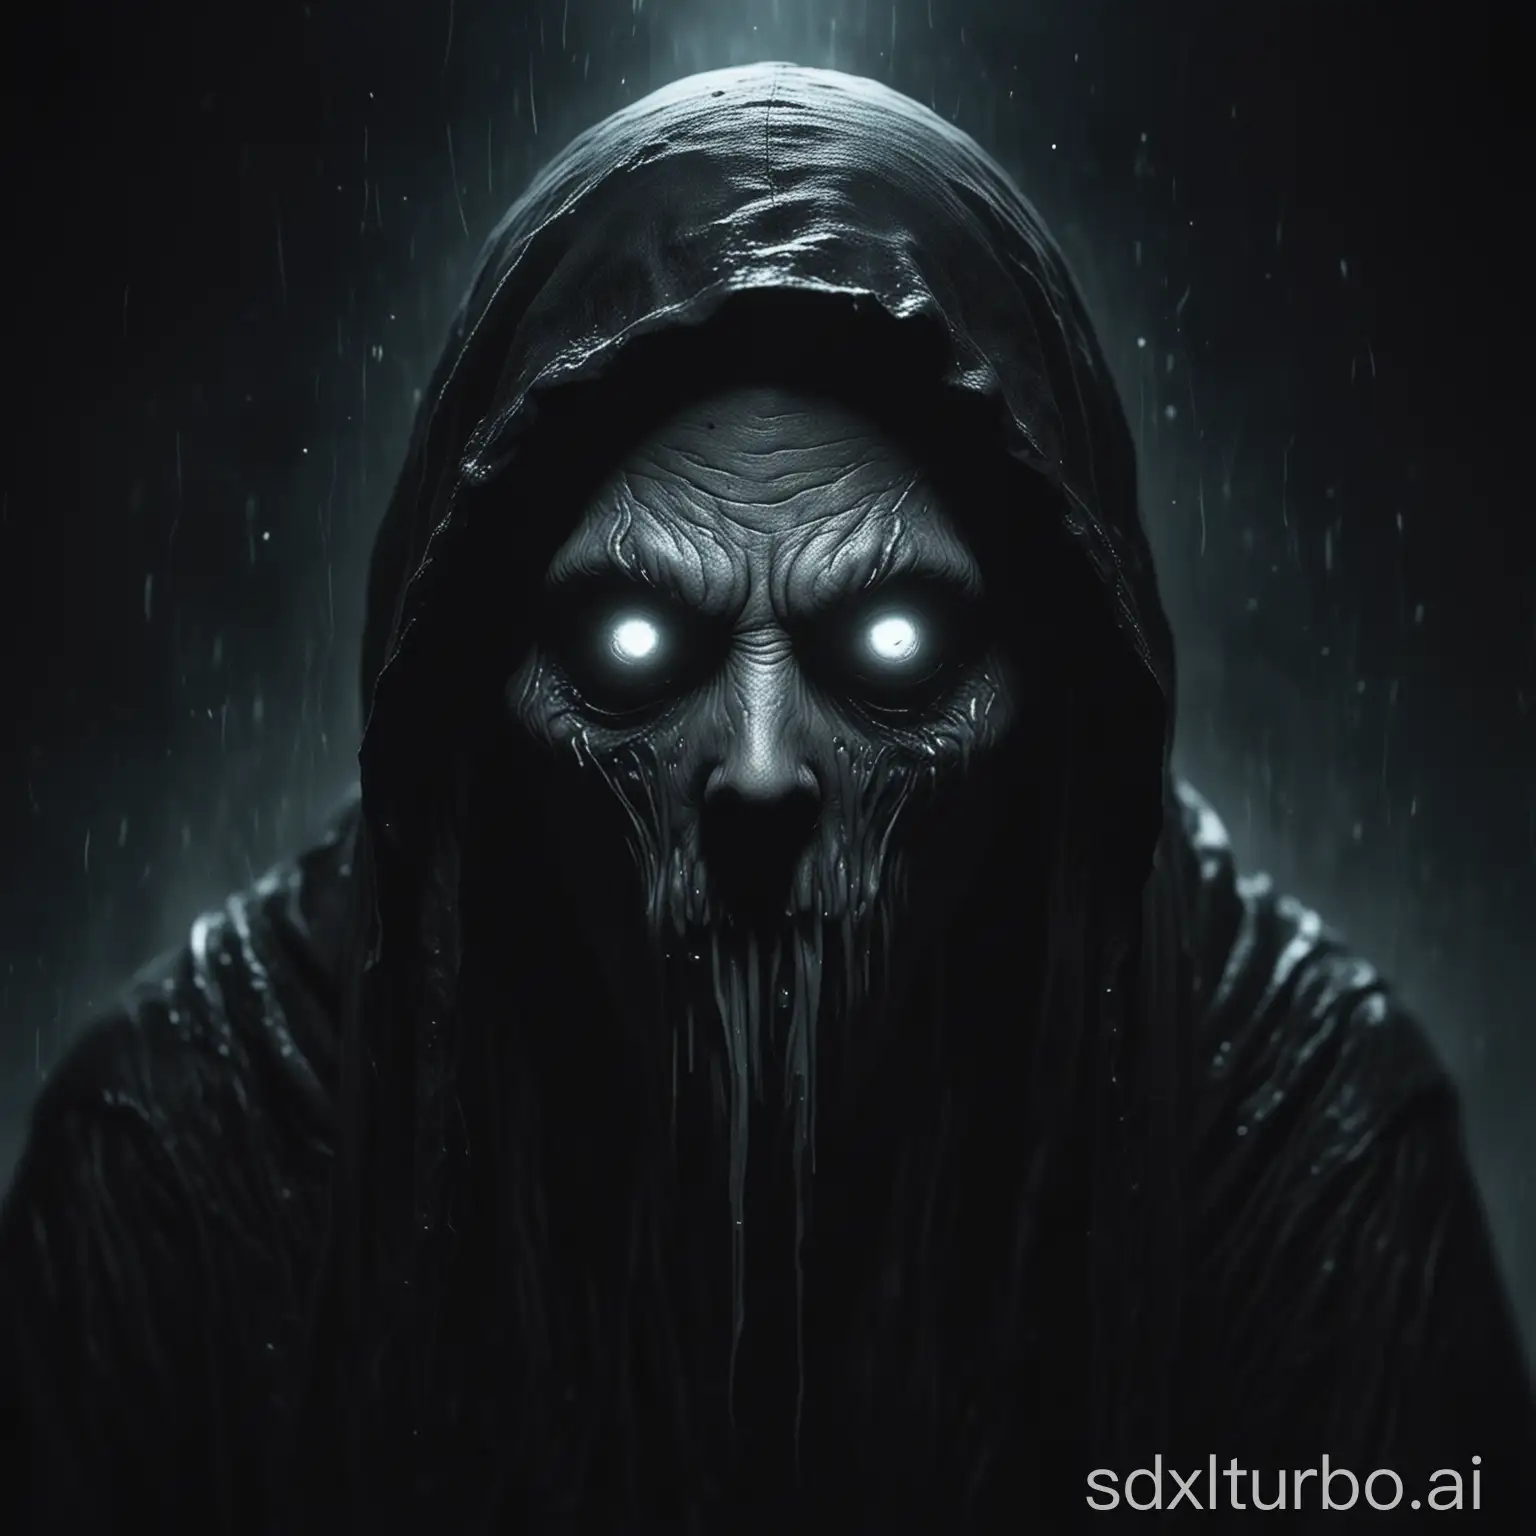 Eldritch-Ghost-Face-in-Dark-Atmosphere